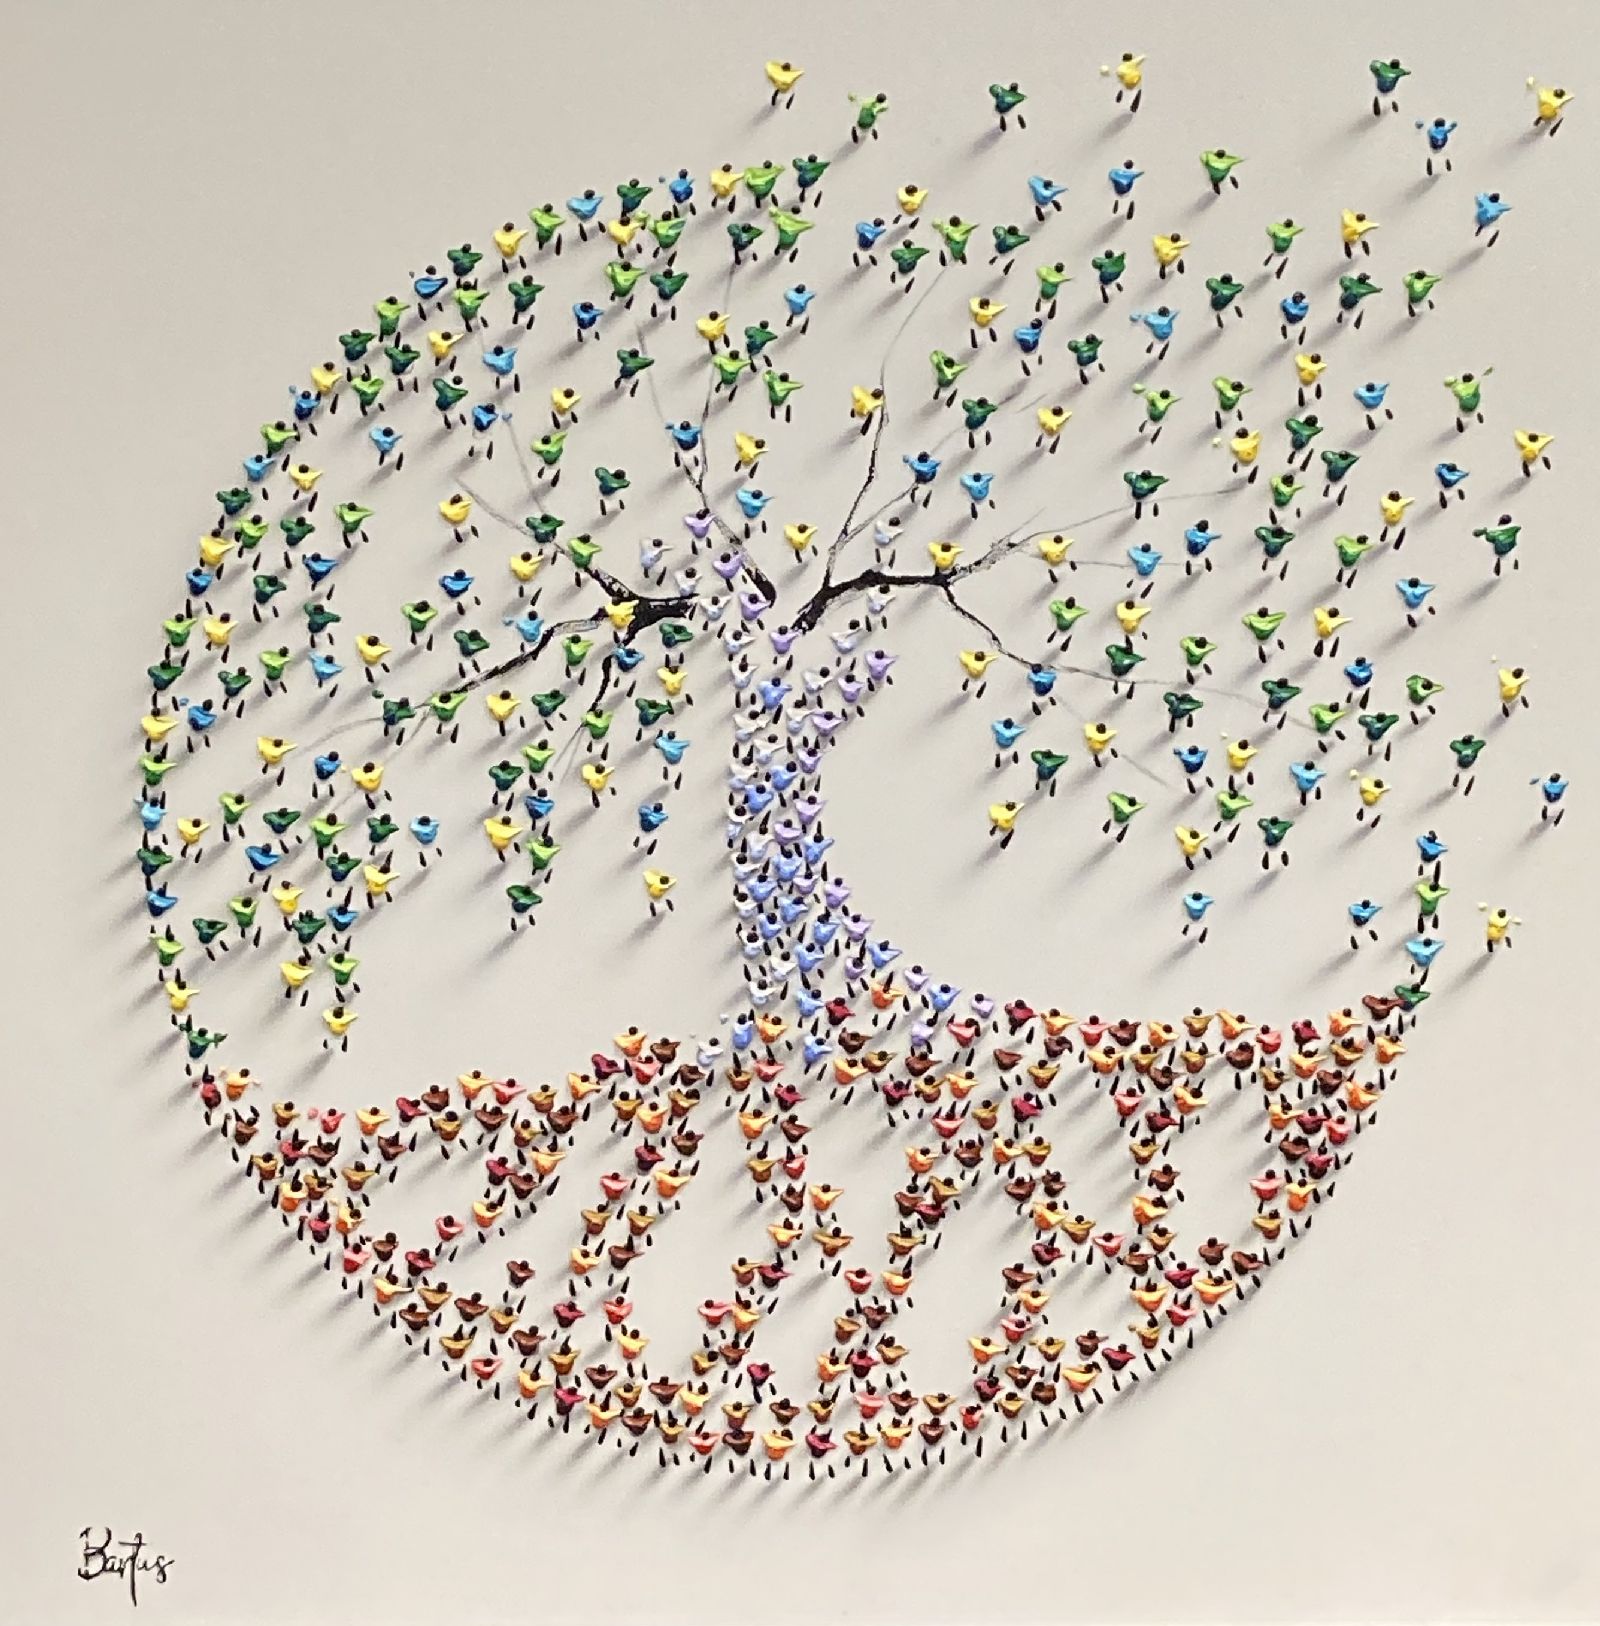 Francisco Bartus - Tree of life V